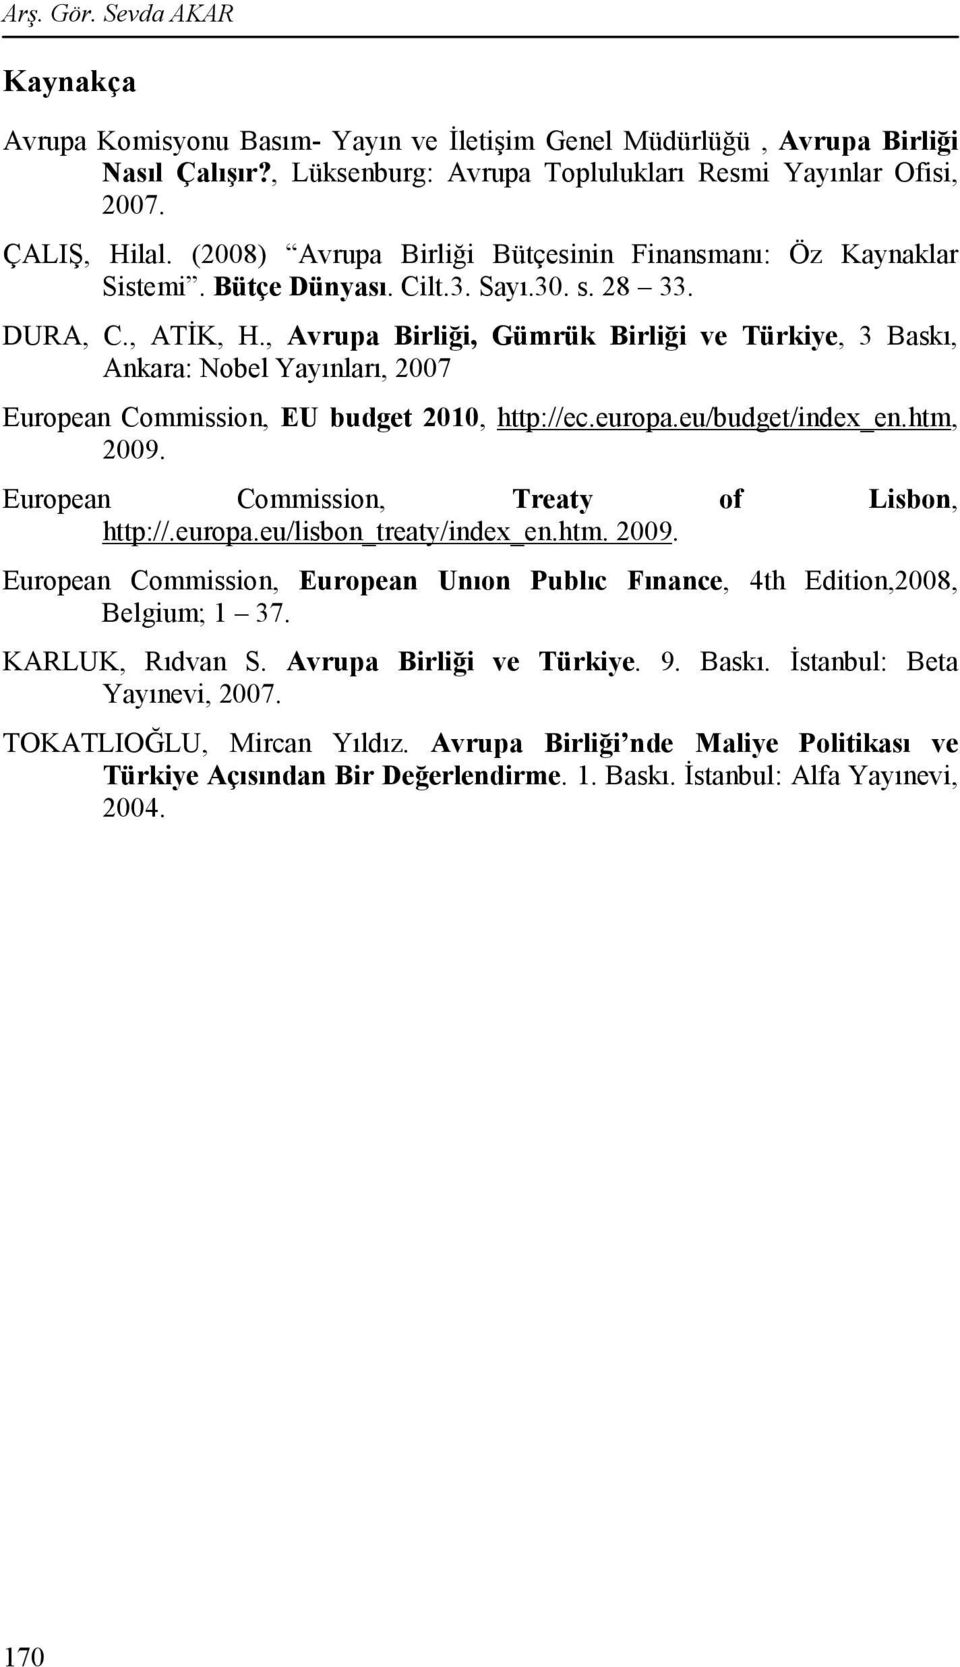 , Avrupa Birliği, Gümrük Birliği ve Türkiye, 3 Baskı, Ankara: Nobel Yayınları, 2007 European Commission, EU budget 2010, http://ec.europa.eu/budget/index_en.htm, 2009.